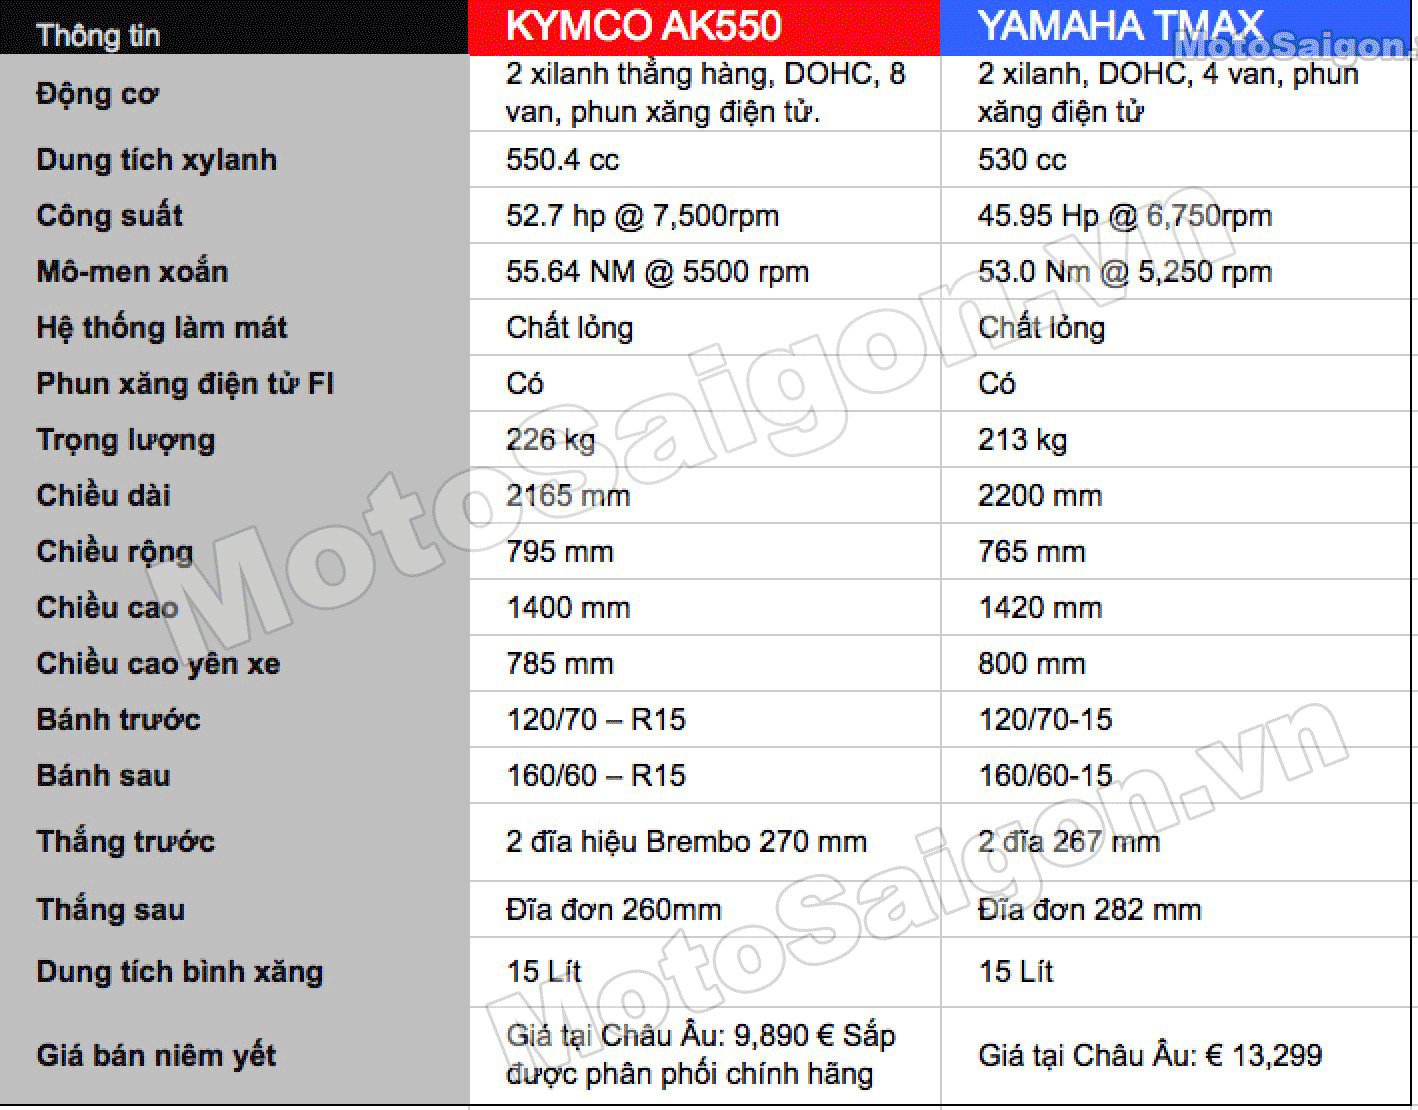 Thông số kỹ thuật KYMCO AK550 vs YAMAHA TMAX